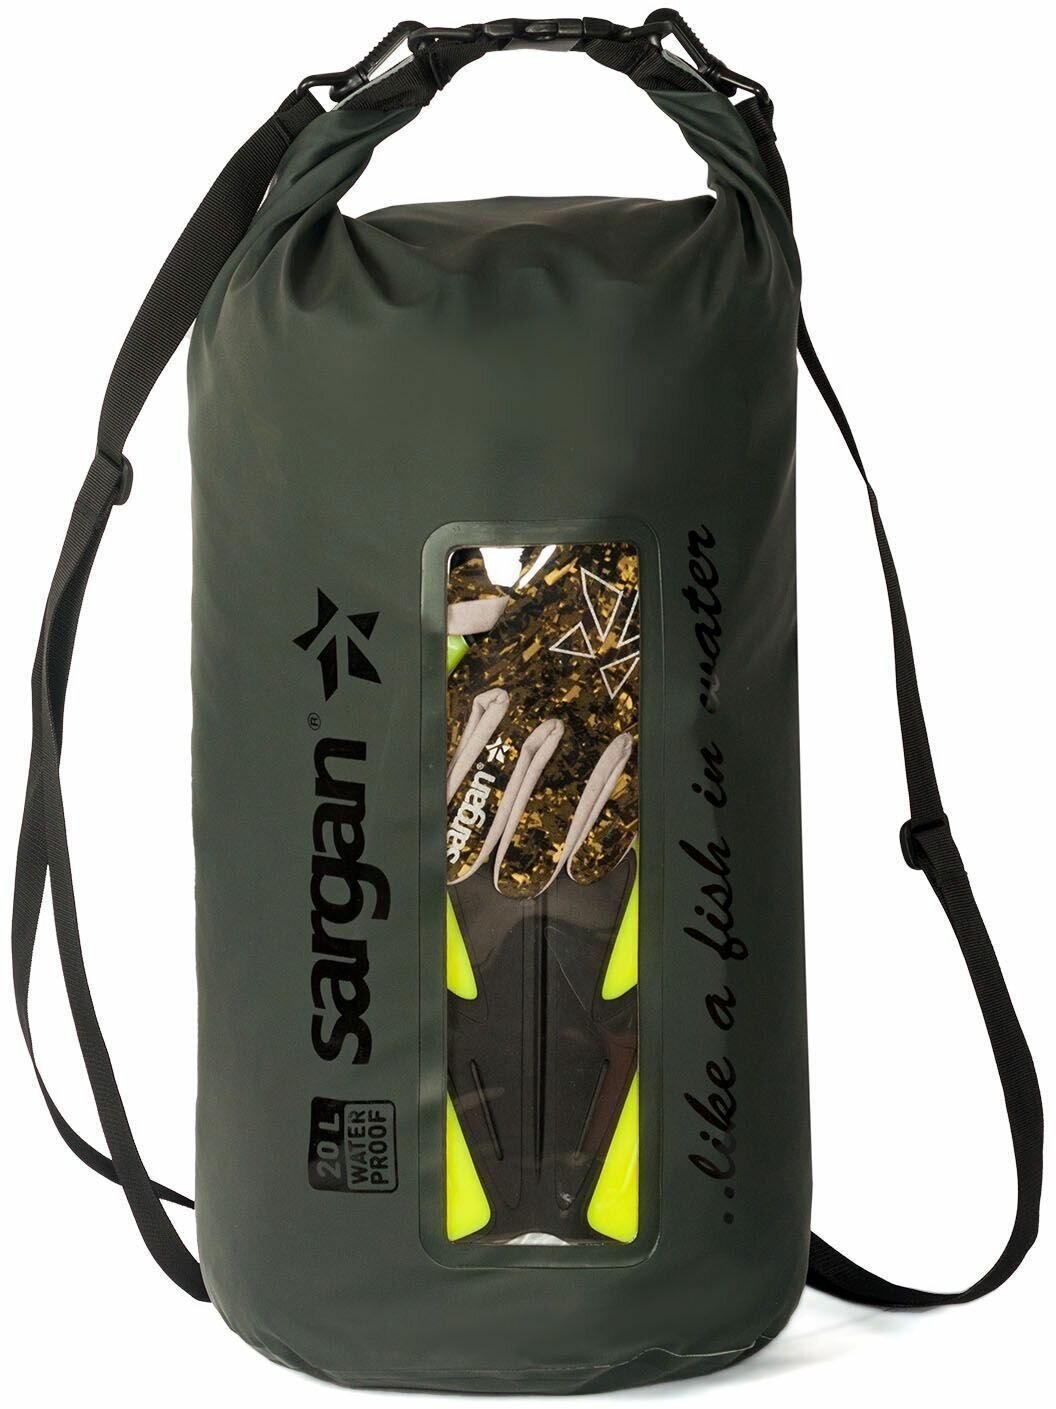 Влагозашитный рюкзак/гермомешок/герморюкзак/гермосумка/ непромокаемая сумка с лямками SARGAN ОКО 20 литров оливковый